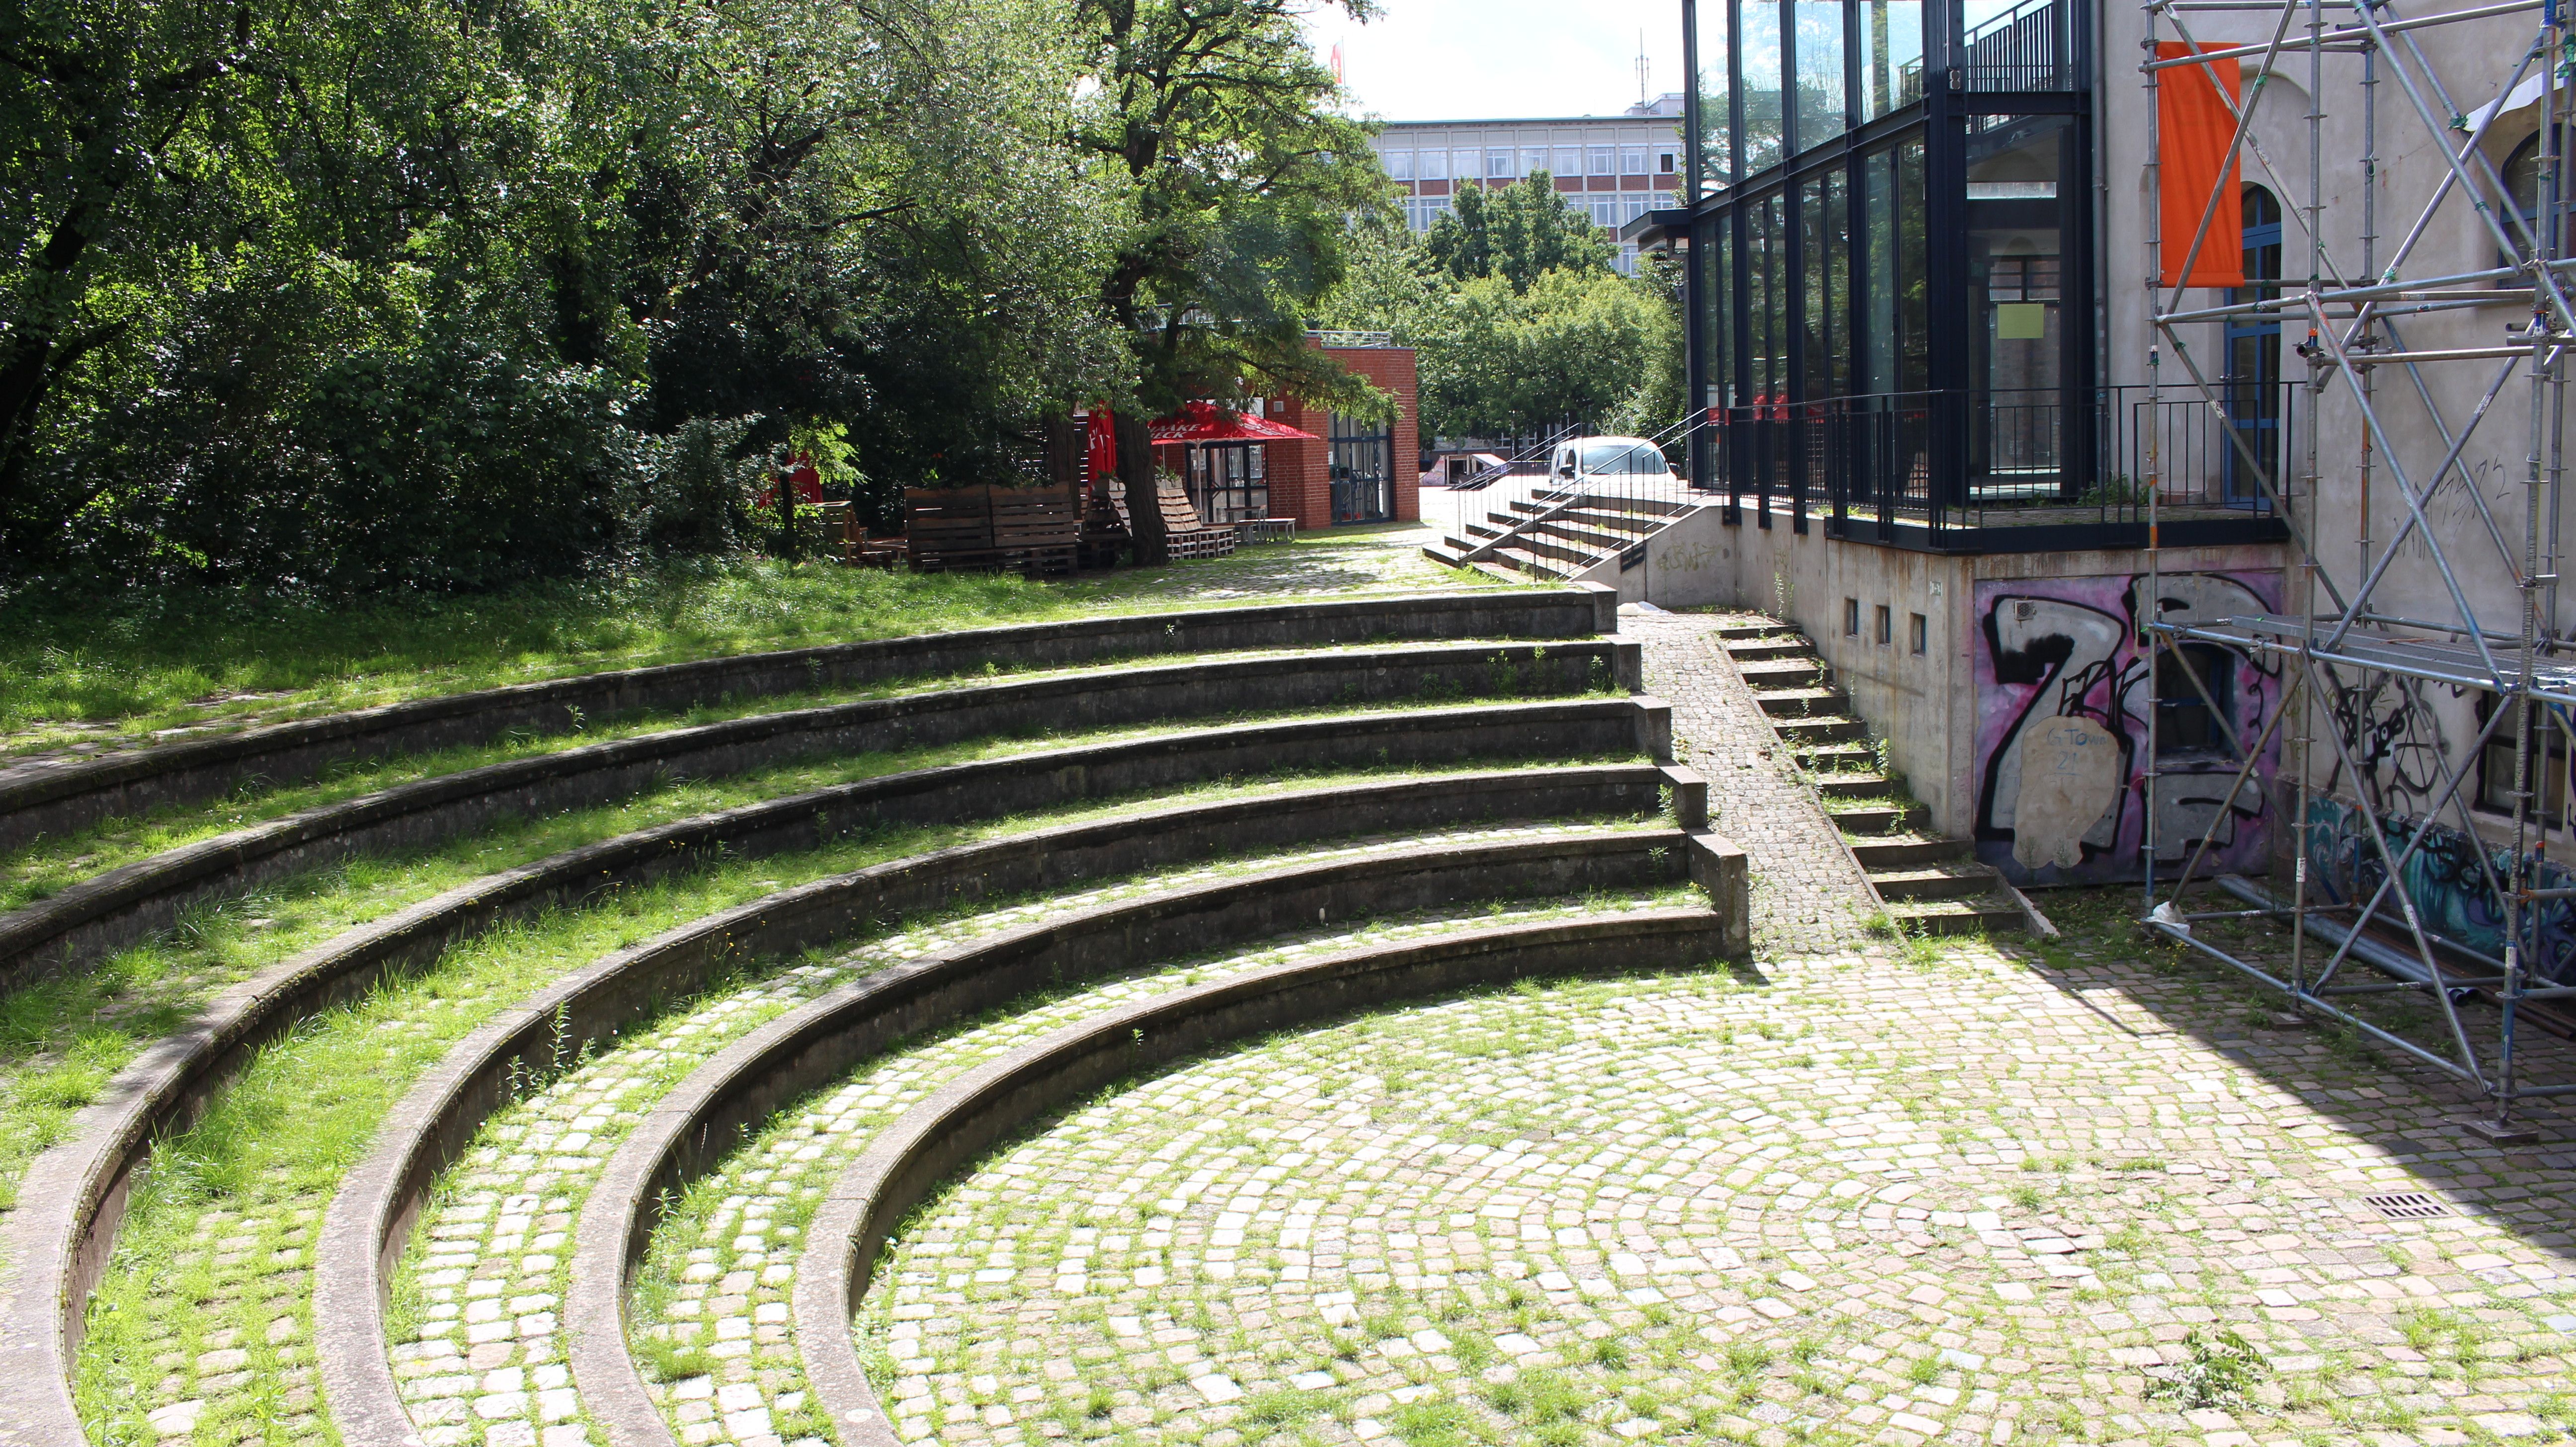 Die Arena ist wie ein Amphitheater angelegt. Die Steinstufen dienen als Tribüne rund um die niedrig gelegenere Bühnenfläche.